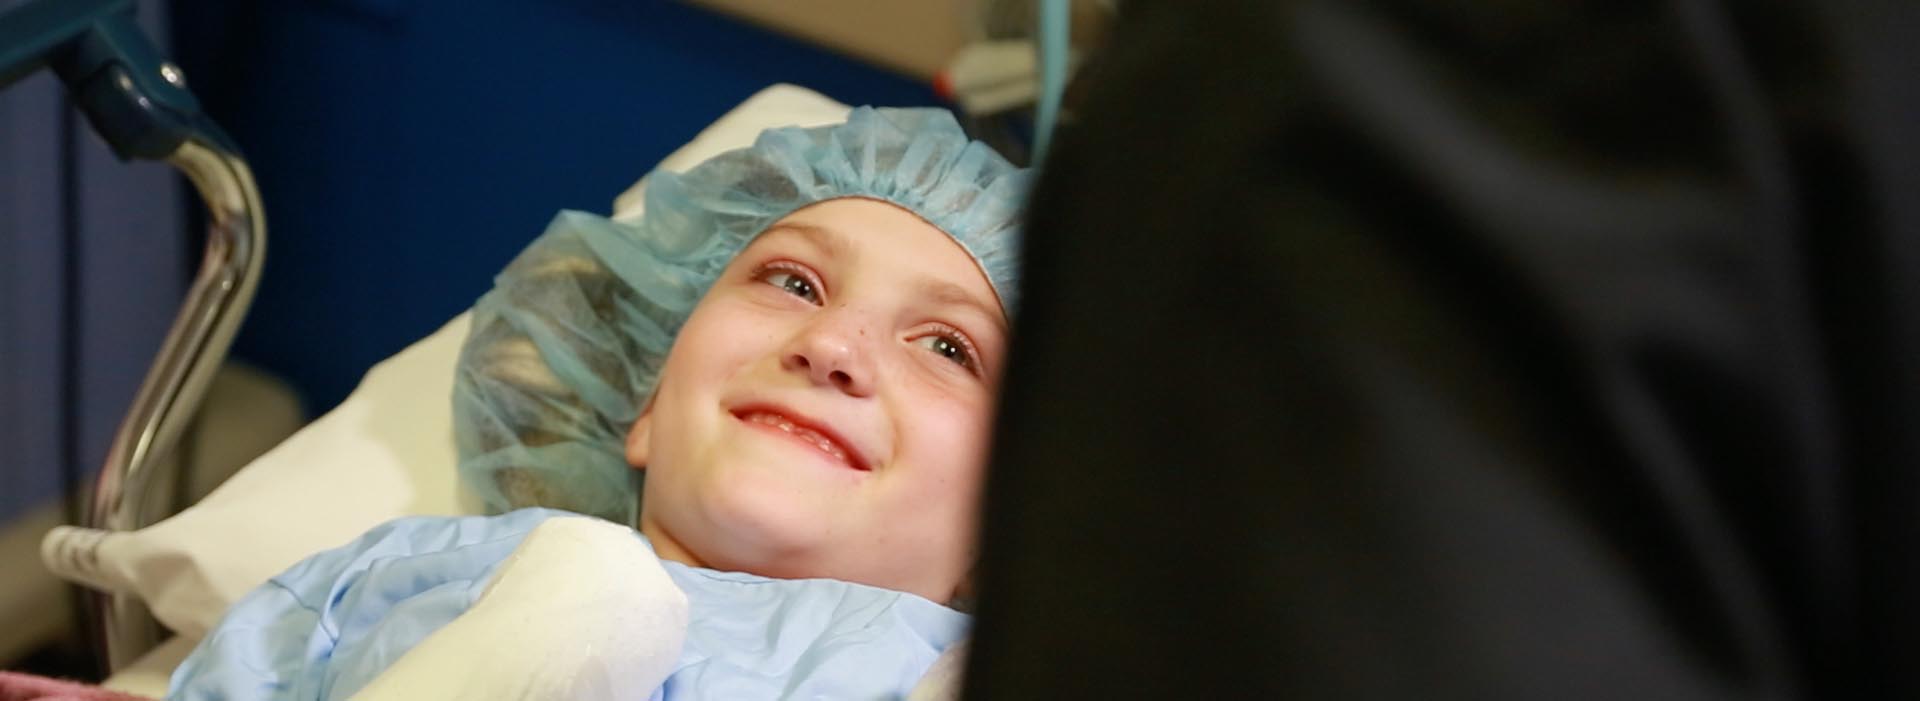 Un niño pequeño paciente le sonríe a alguien fuera de marco